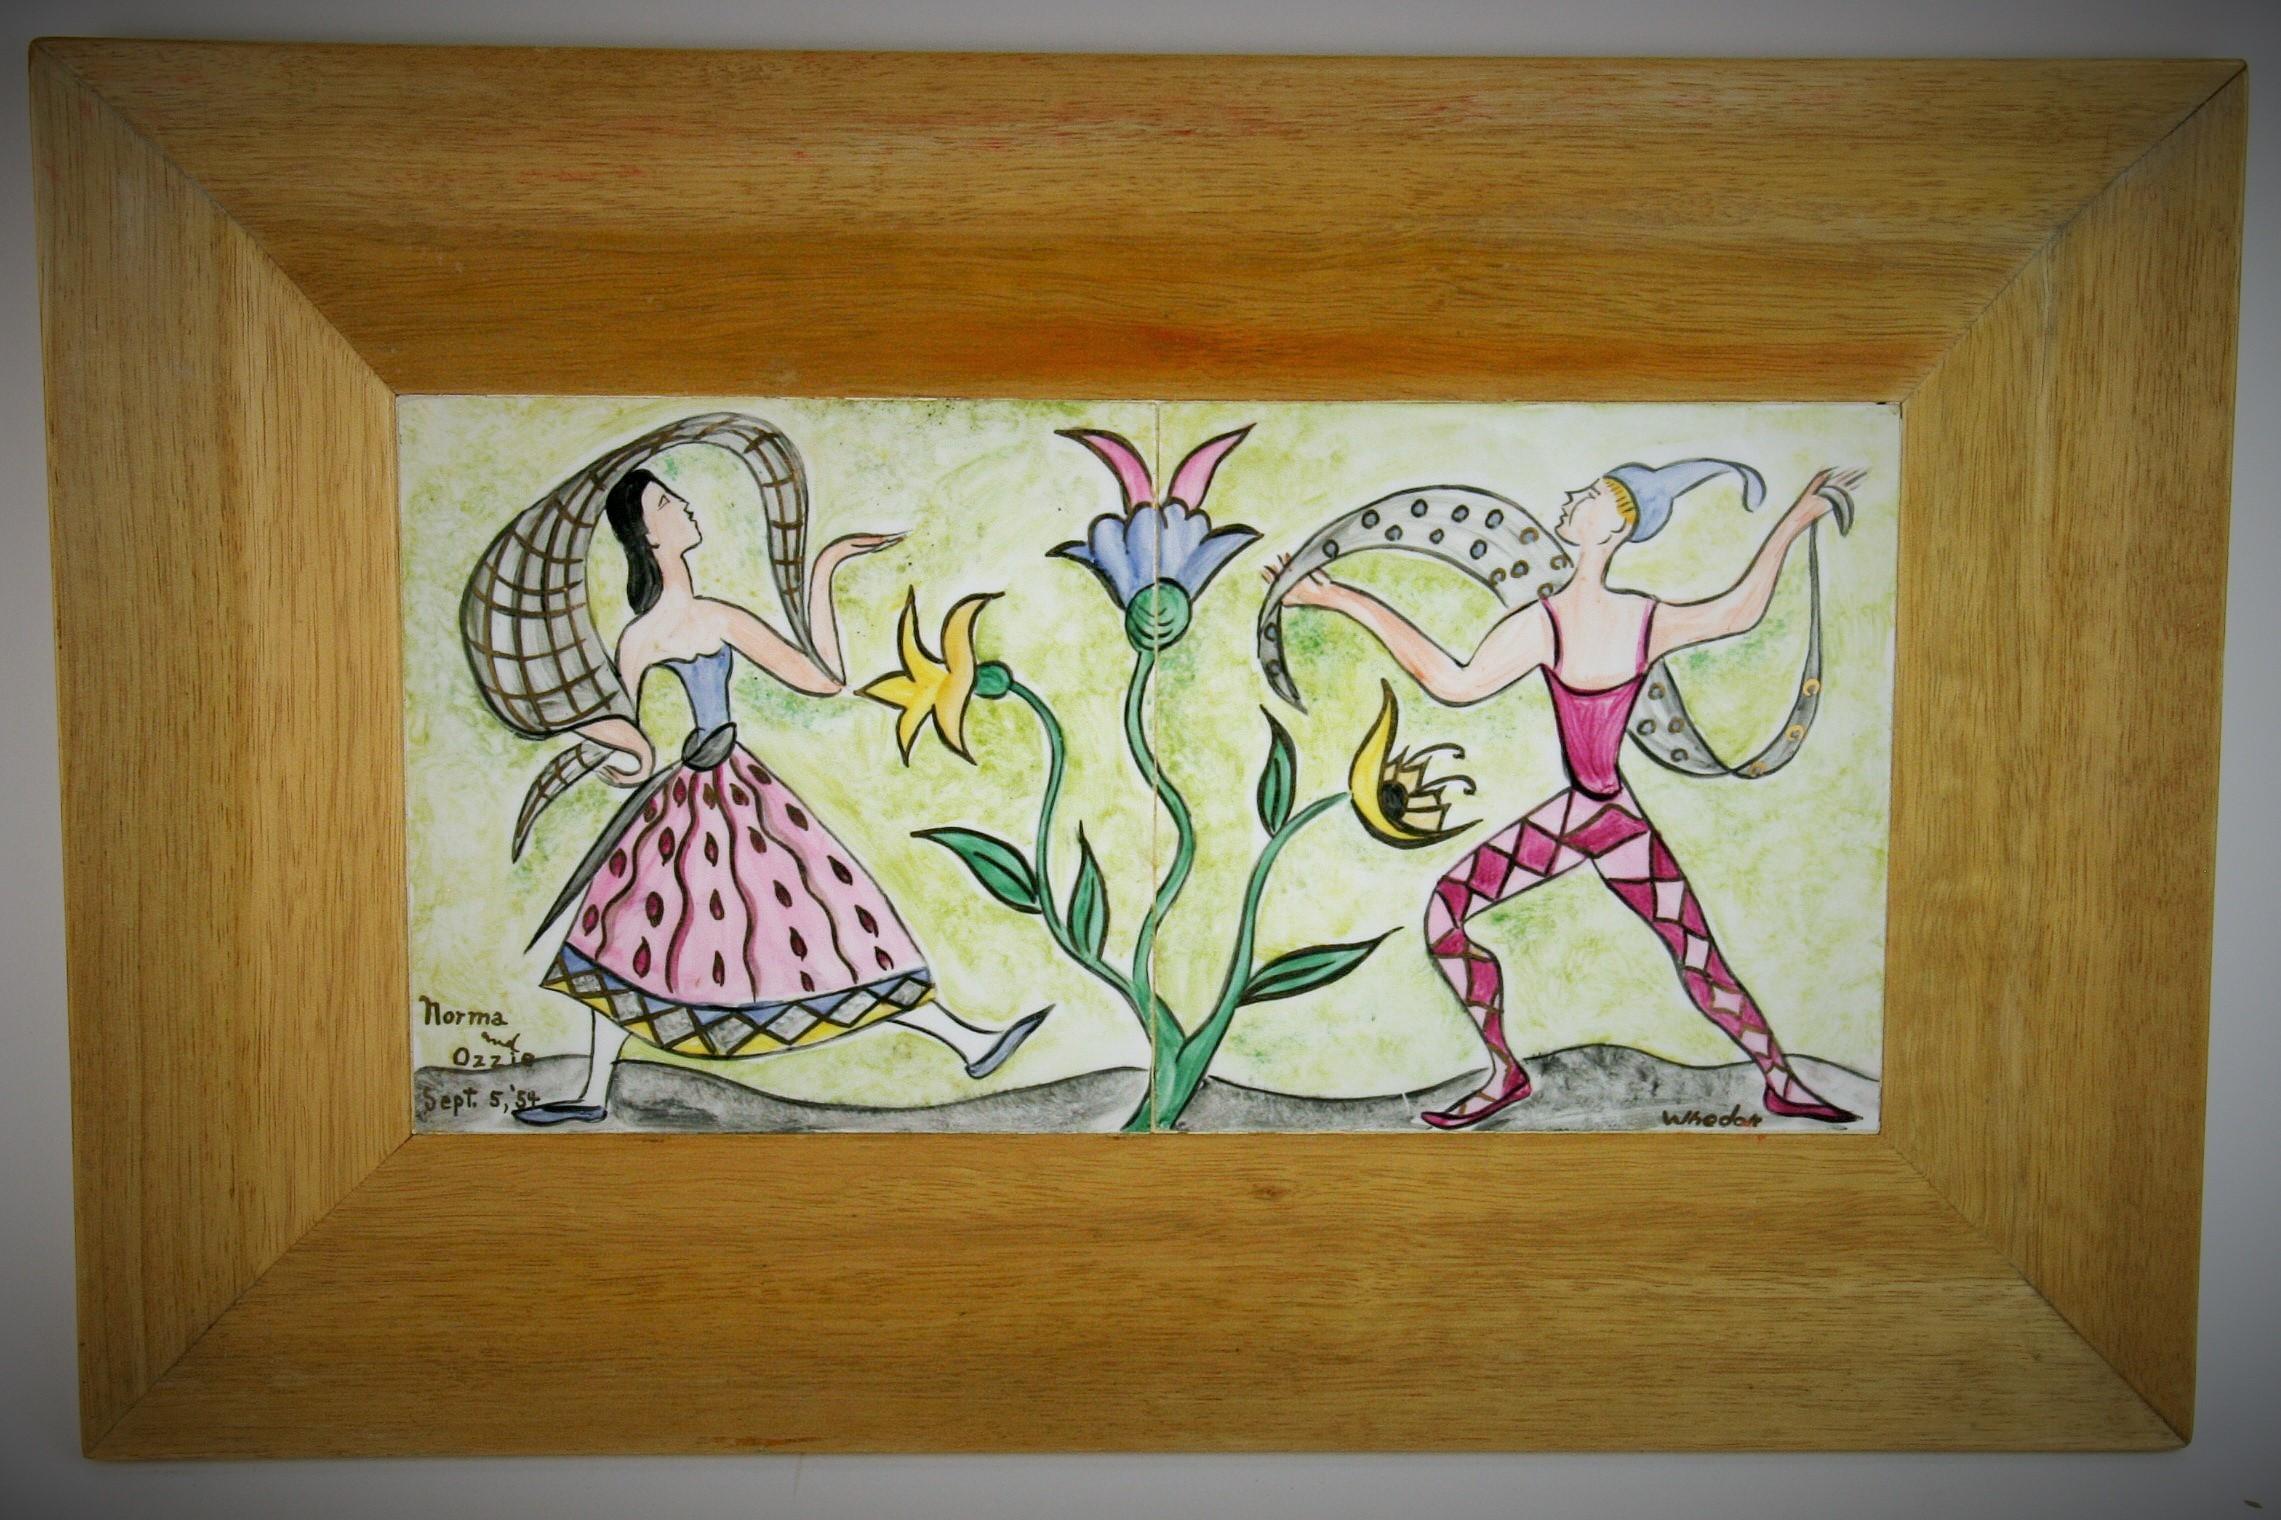 3-400 Deux panneaux en céramique d'art populaire peints à la main dans un cadre en bois naturel.
Taille de l'image : 12.5 x 6